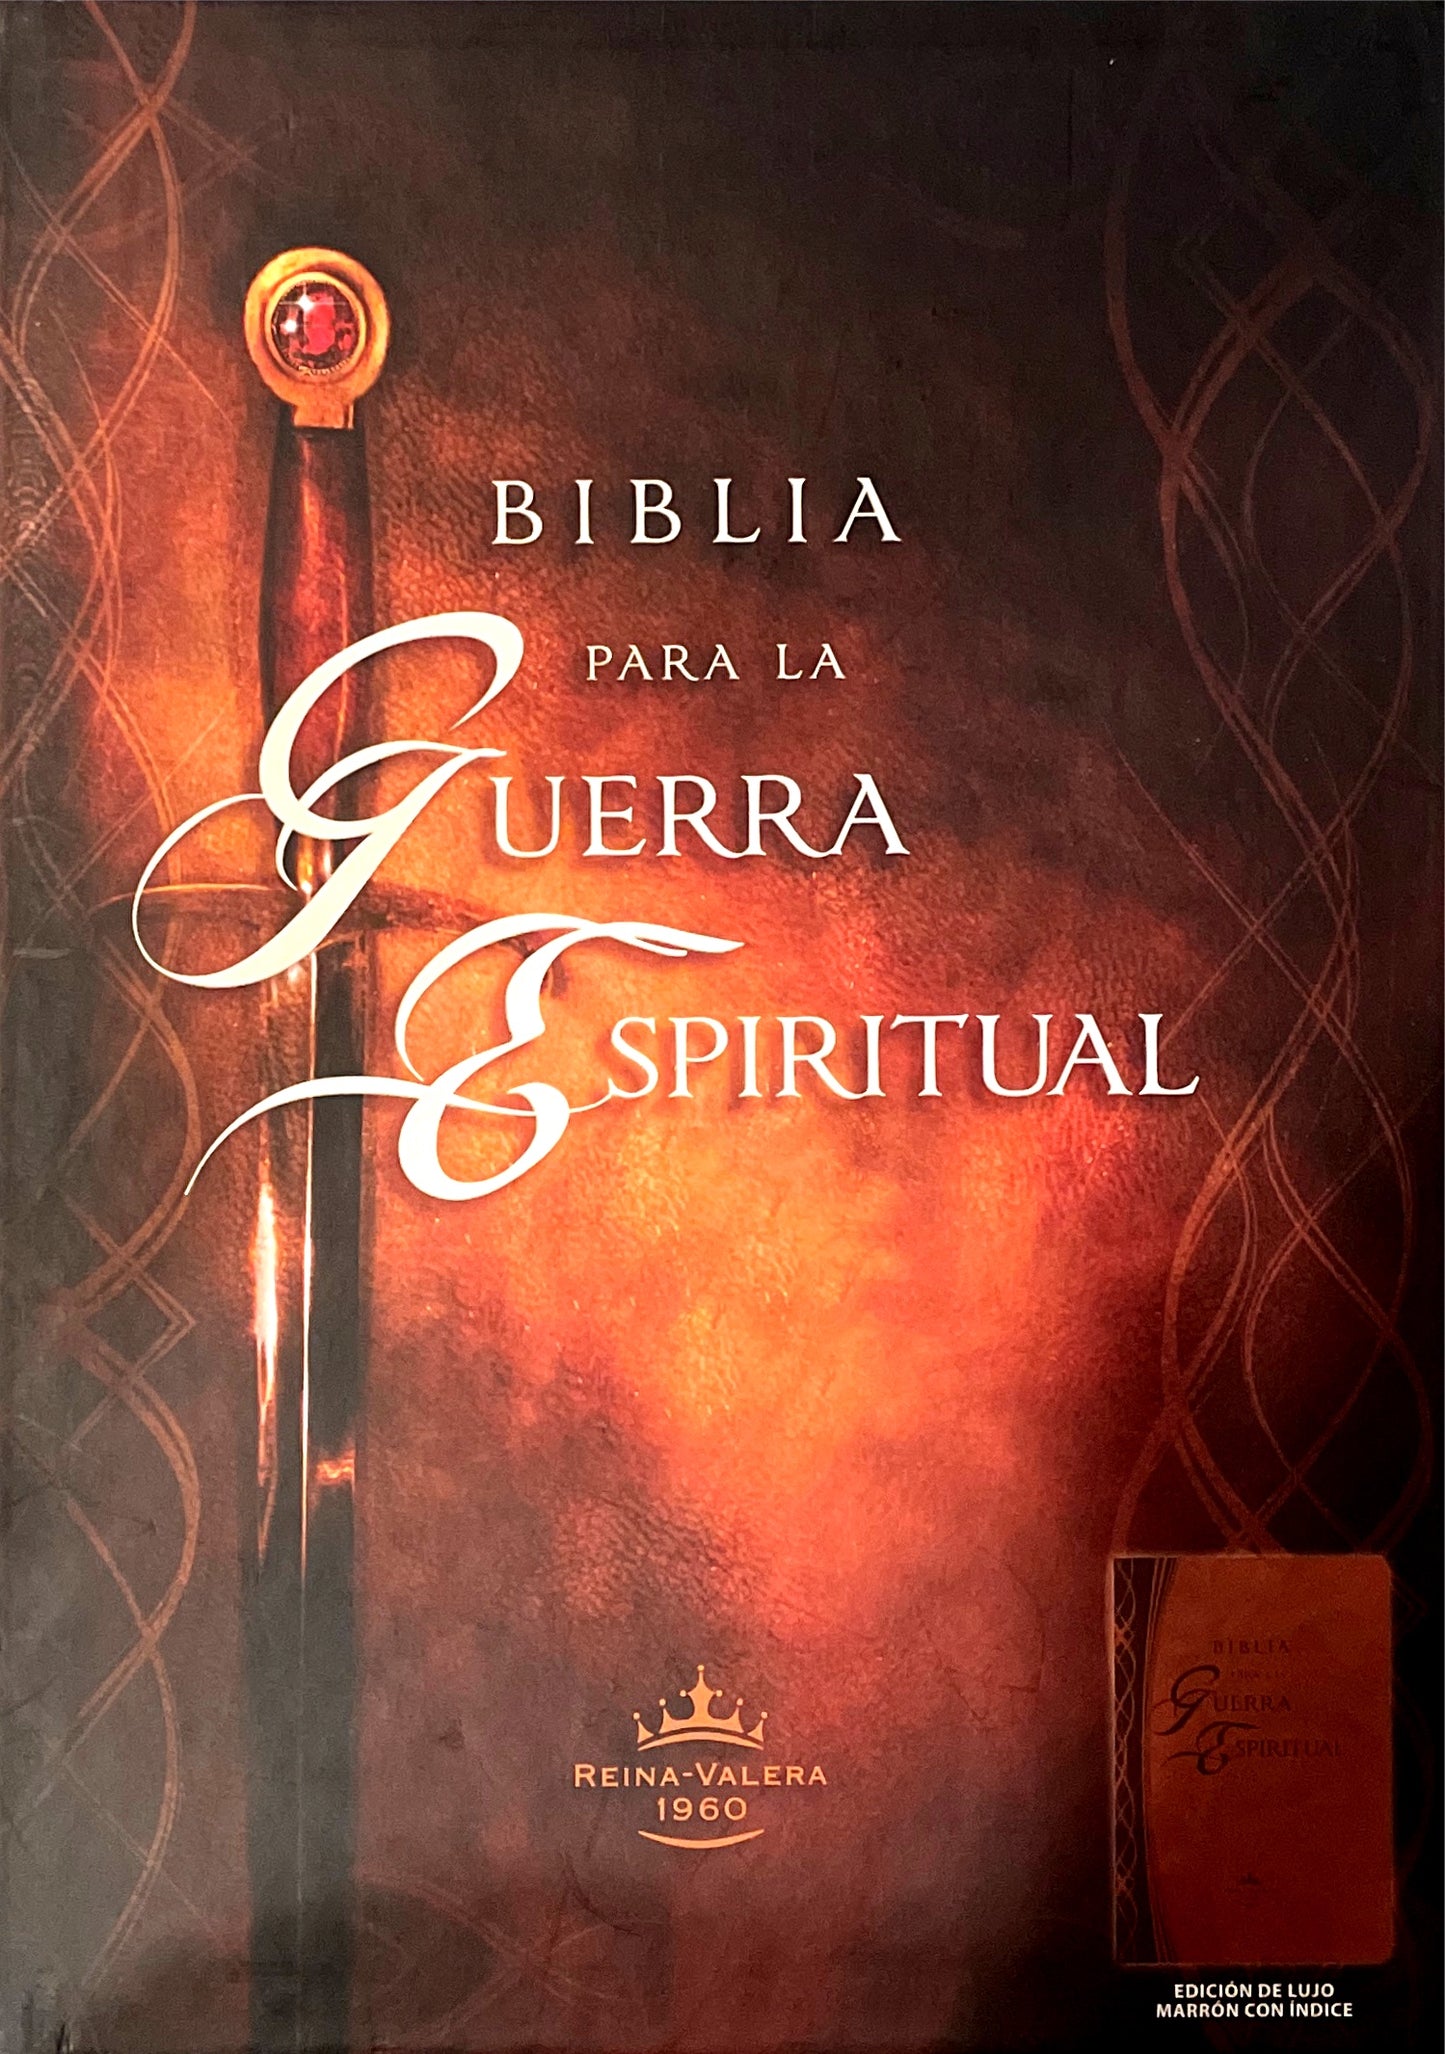 Biblia Para La Guerra Espiritual - RVR1960 - Edición de Lujo - Color Marrón con Índice -